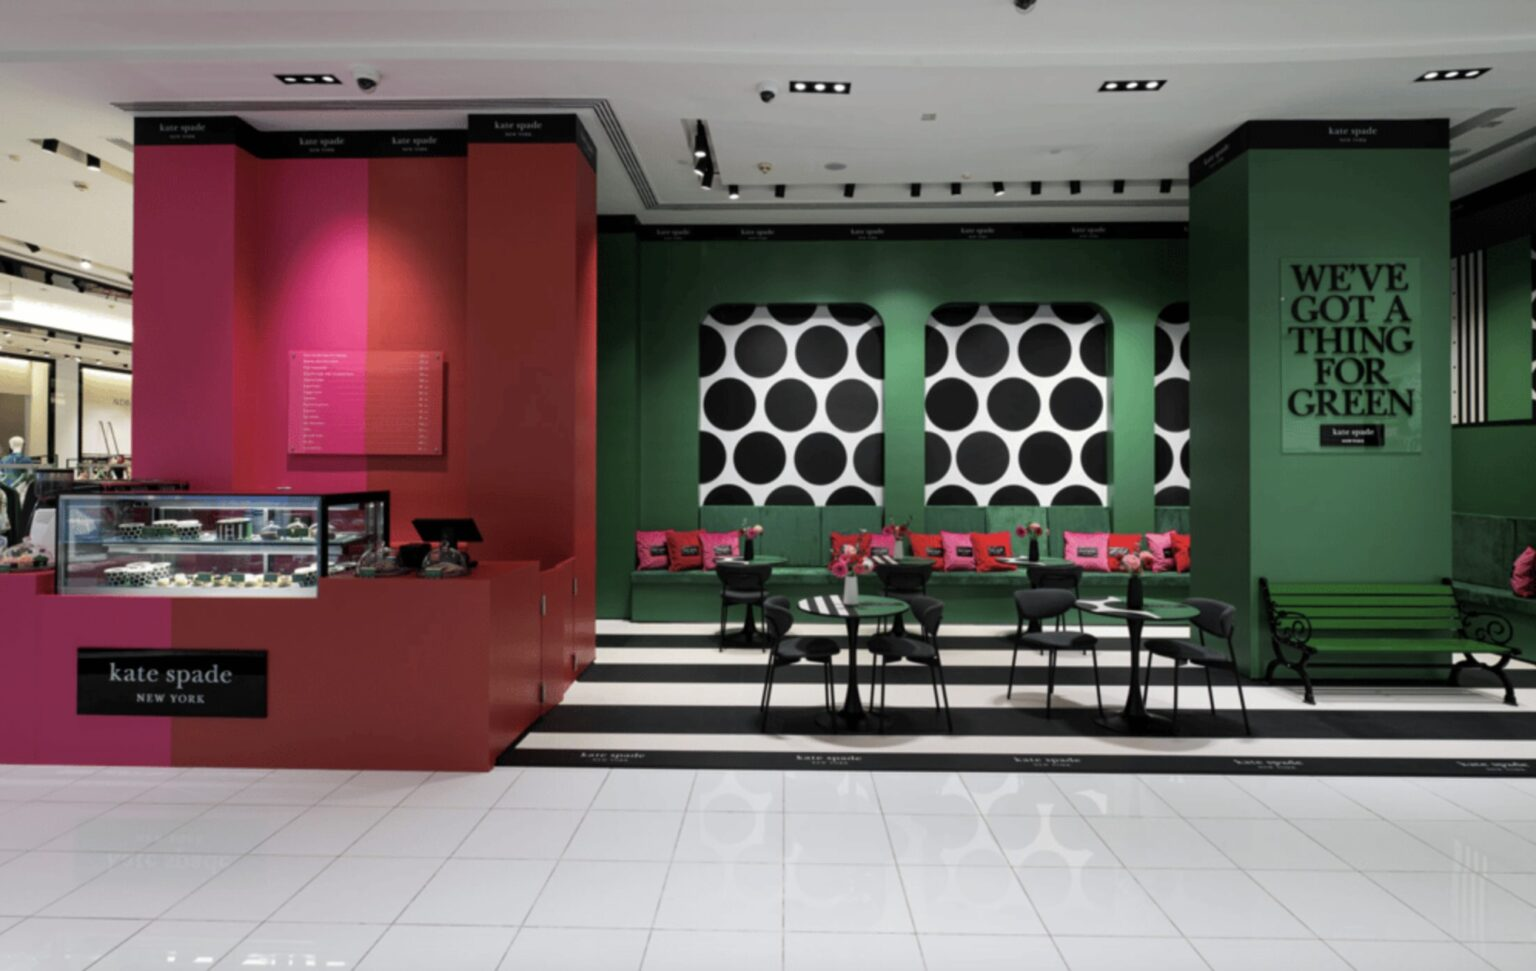 Imagem de conteúdo da notícia "Conheça os cafés de marcas de grife como Armani e Tiffany & Co em Dubai" #1